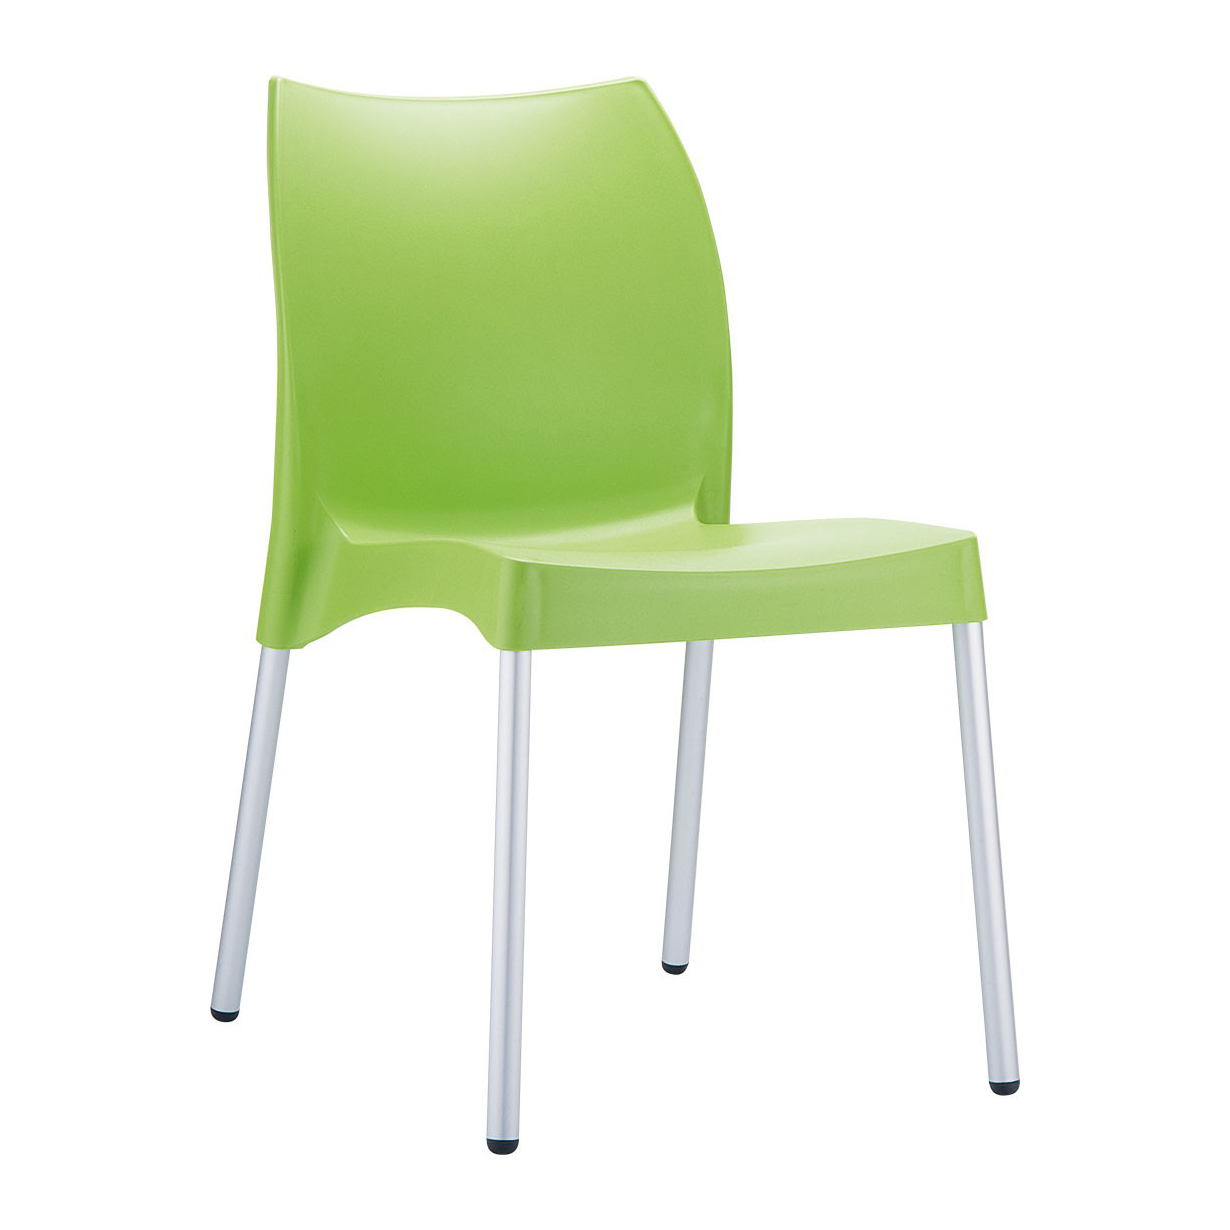 Пластмасов стол - RFG Vito зелен